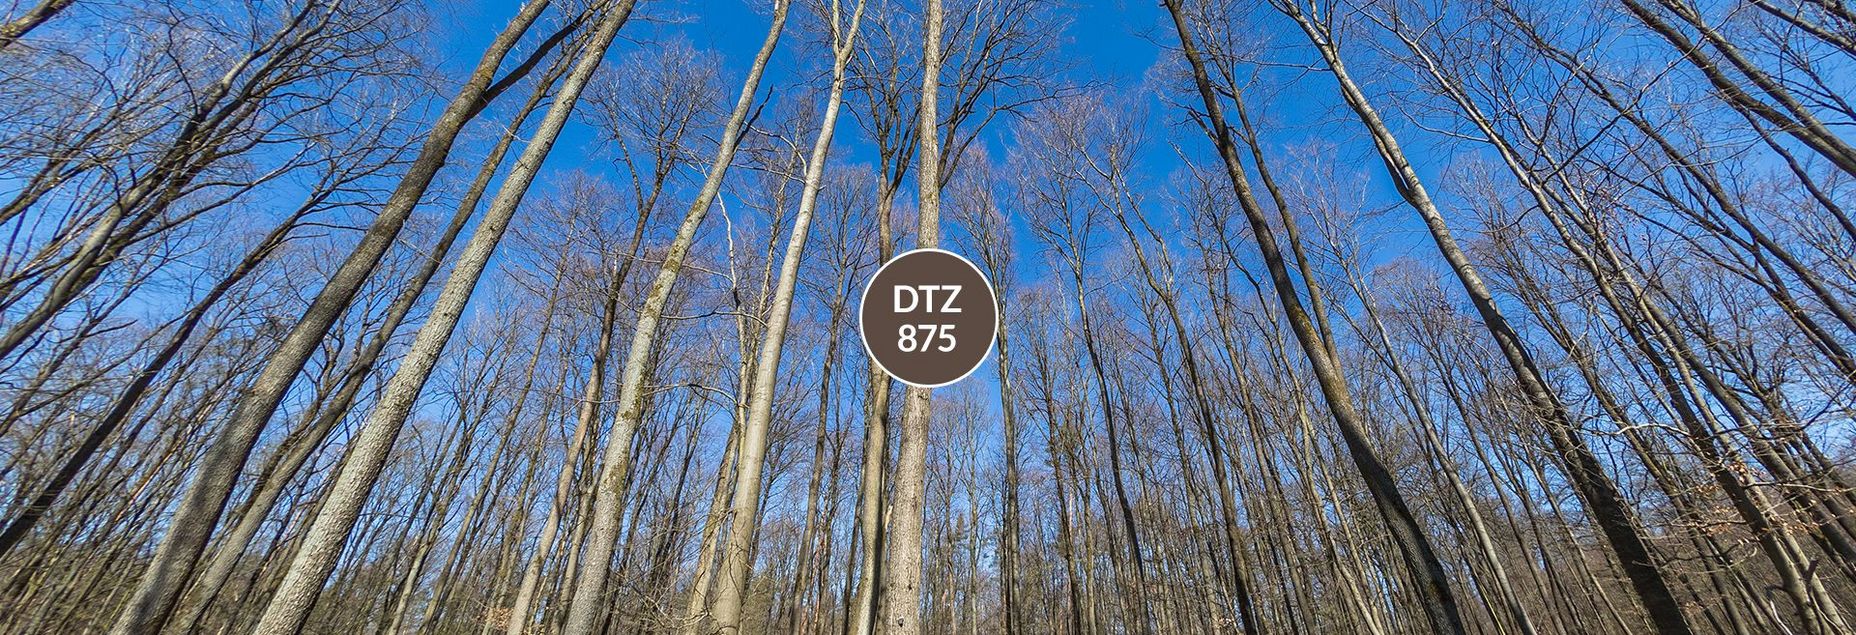 DTZ 875 - Baum